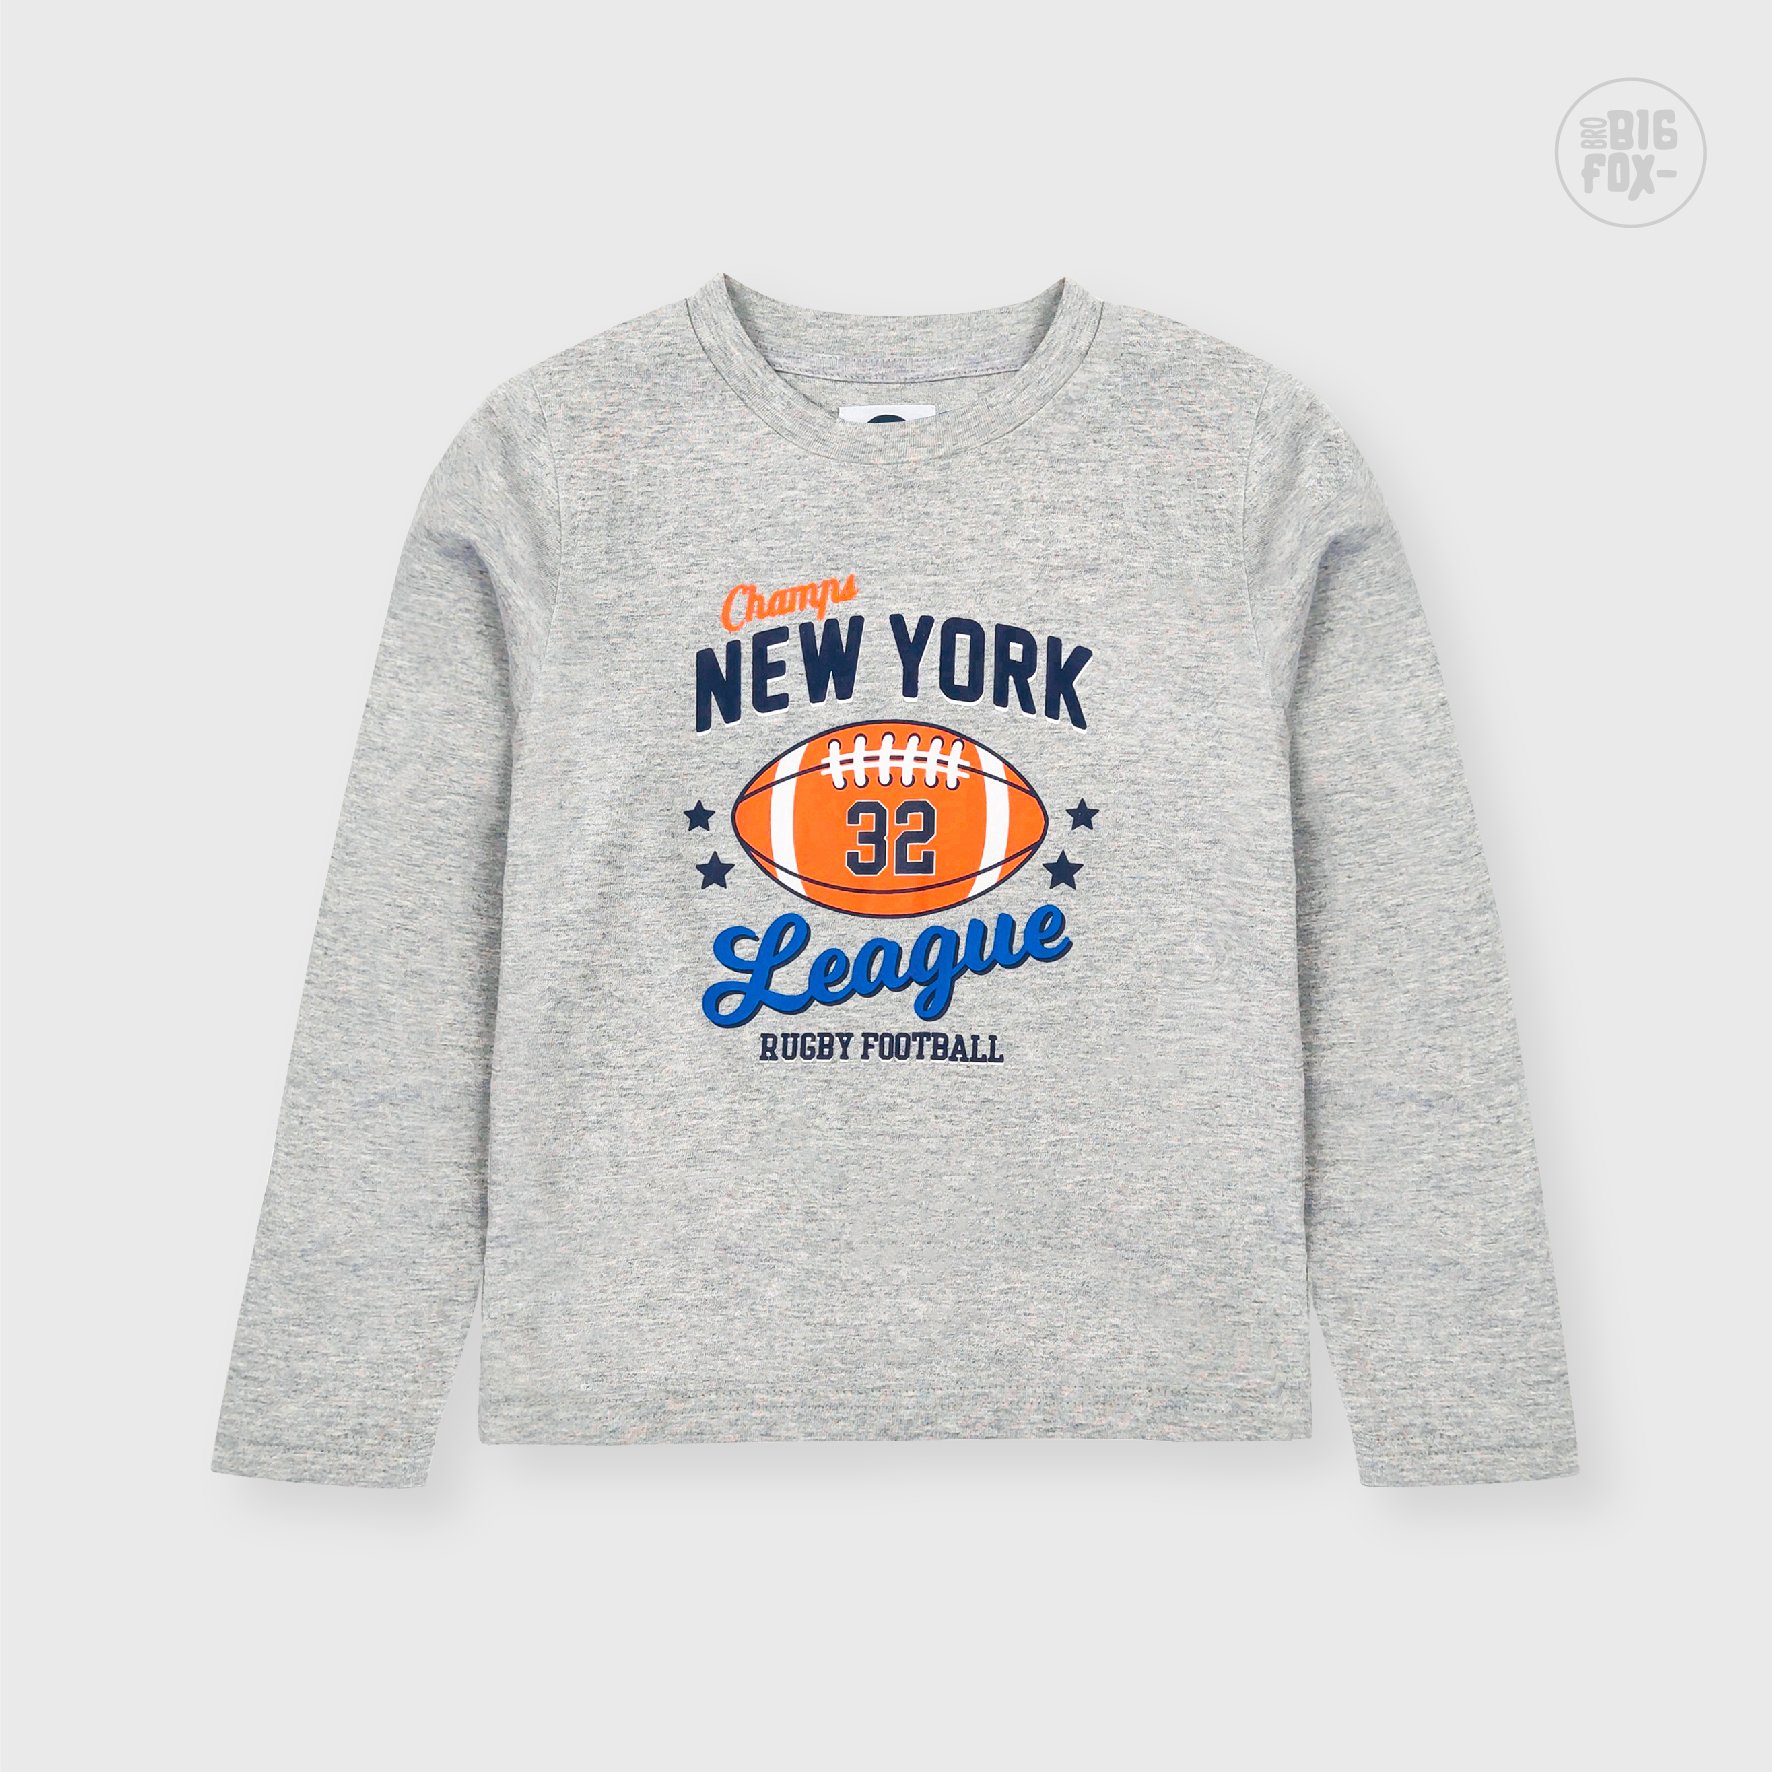 Áo bé trai BIGFOX - MISS MEOW thu đông, áo thun dài tay cho bé size đại in hình bóng bầu dục Newyork 11 - 38 kg